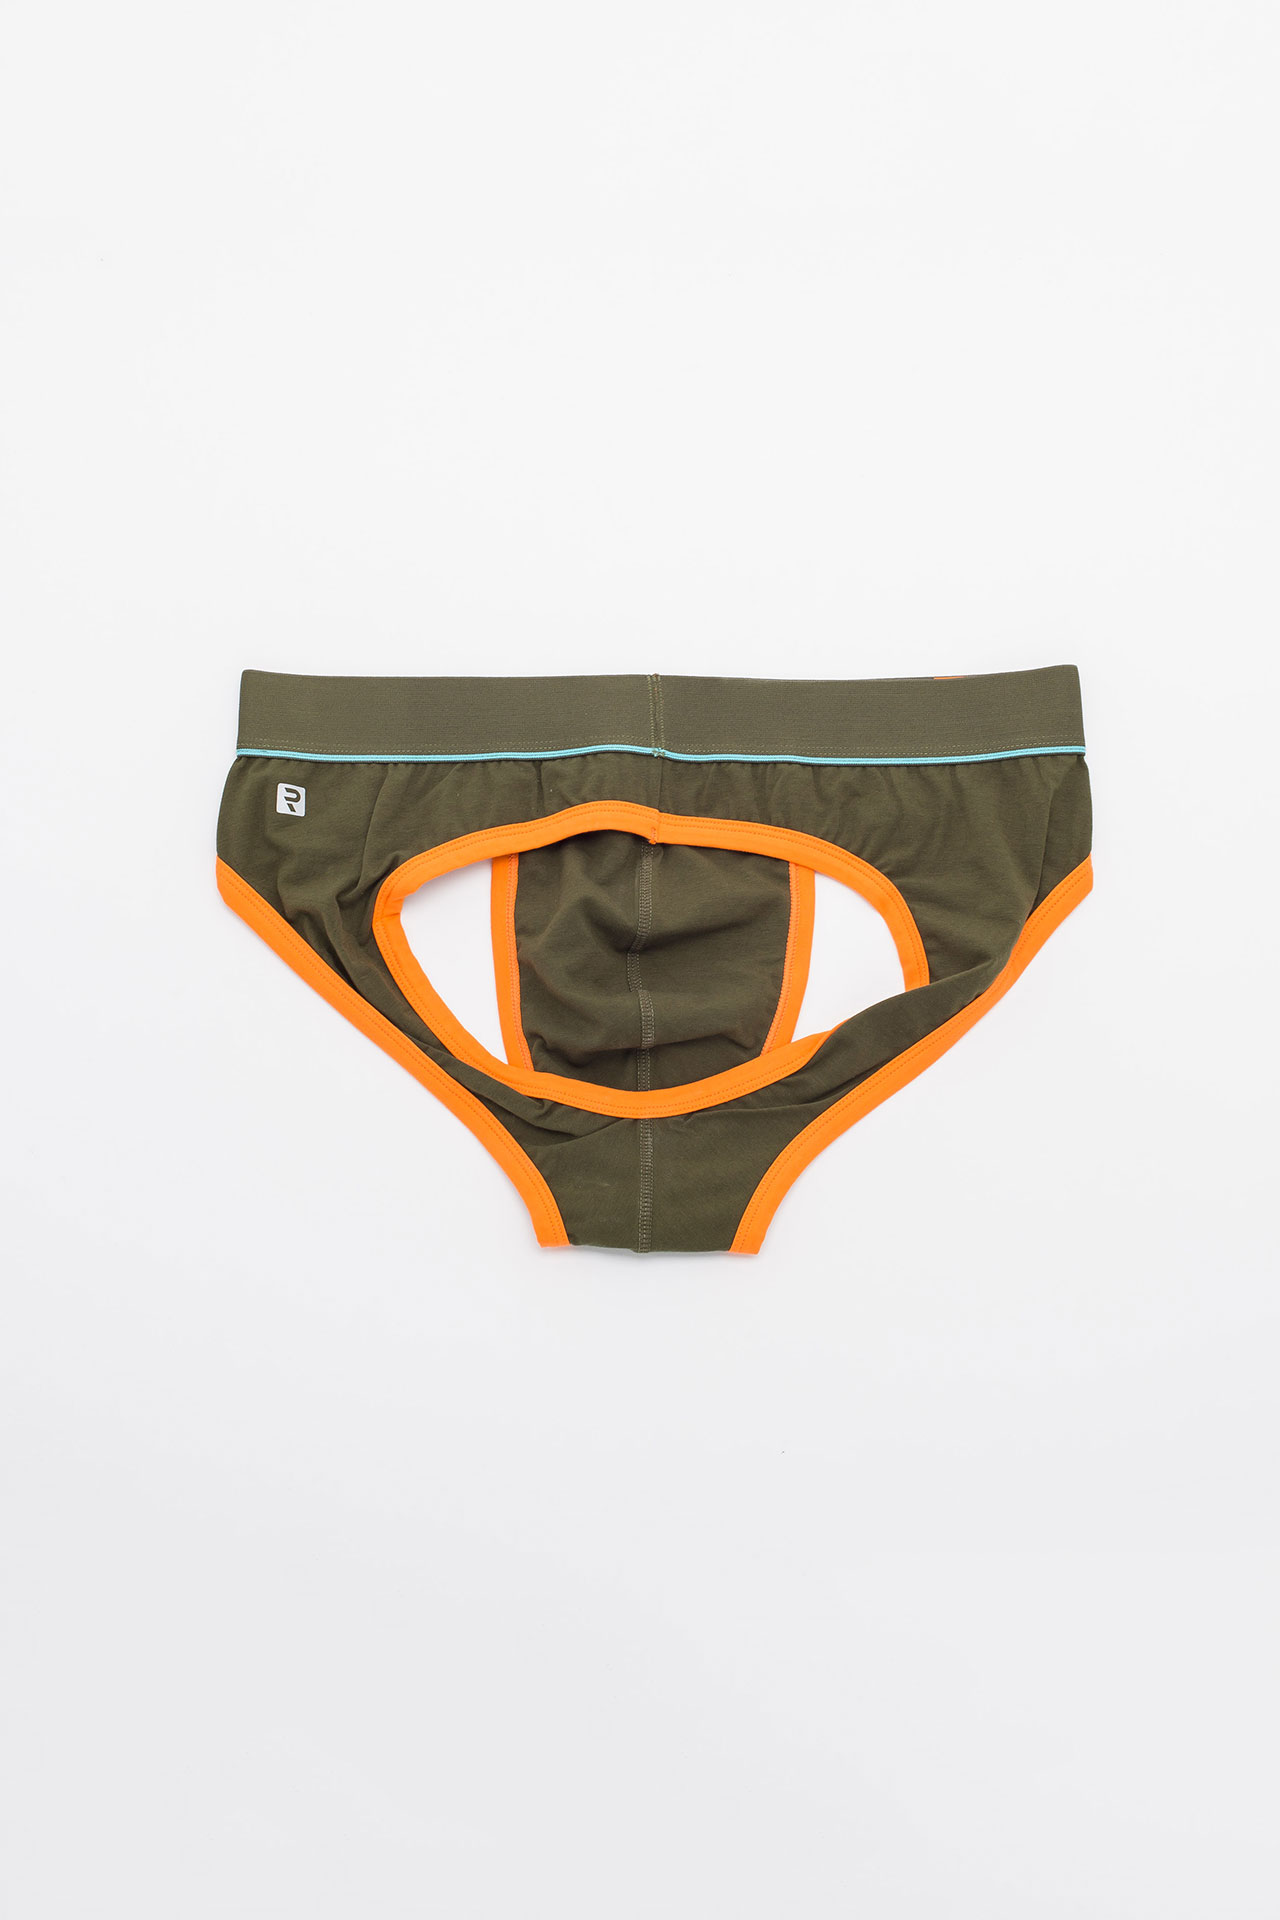 Men's Contour Pouch Low Rise Backless Jockstrap Briefs Underwear